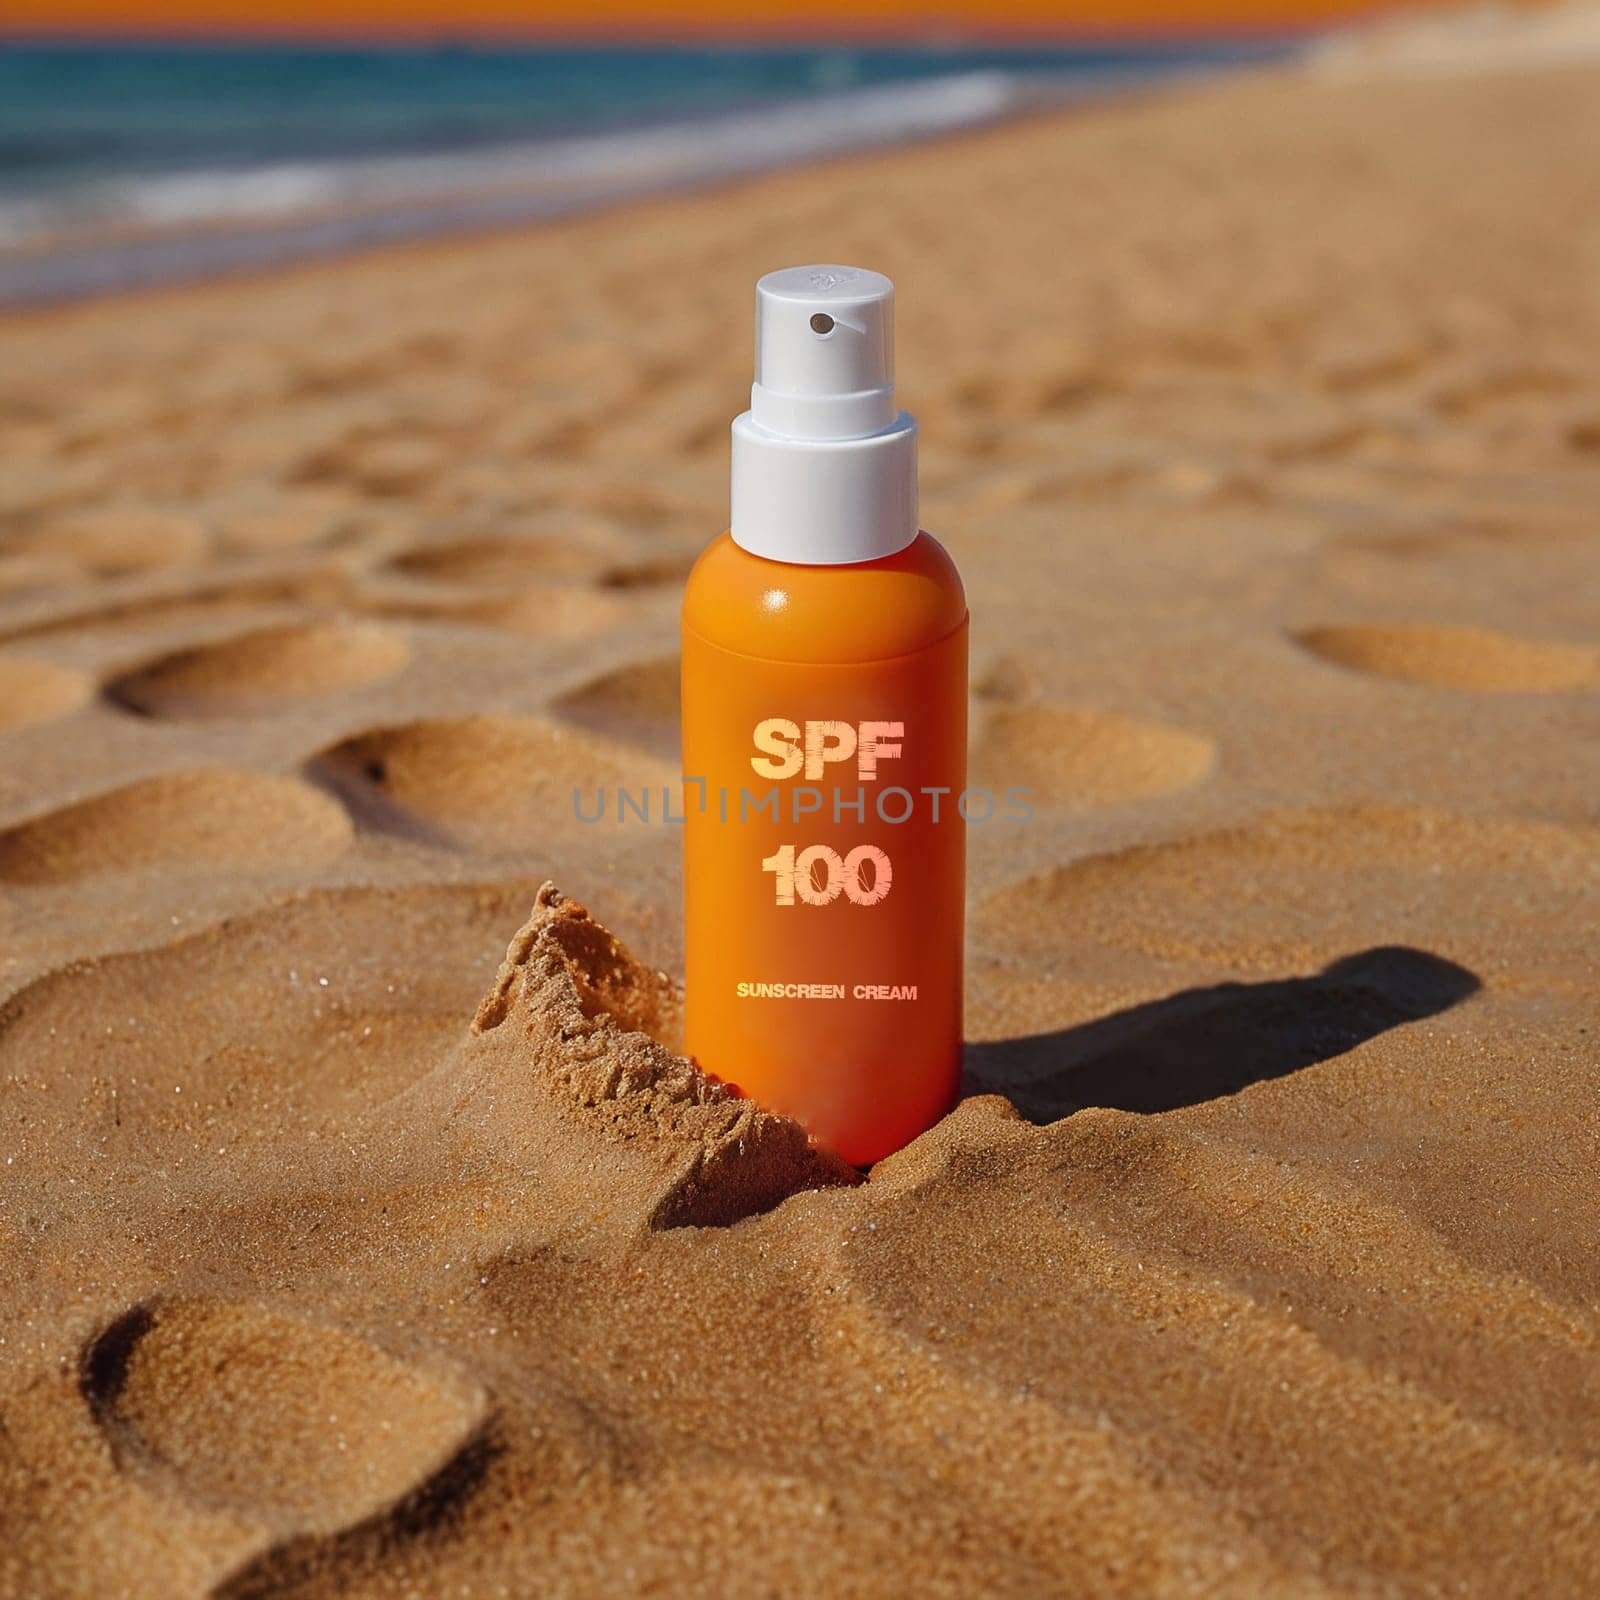 SPF 100 sunscreen in orange bottle by VeronikaAngo